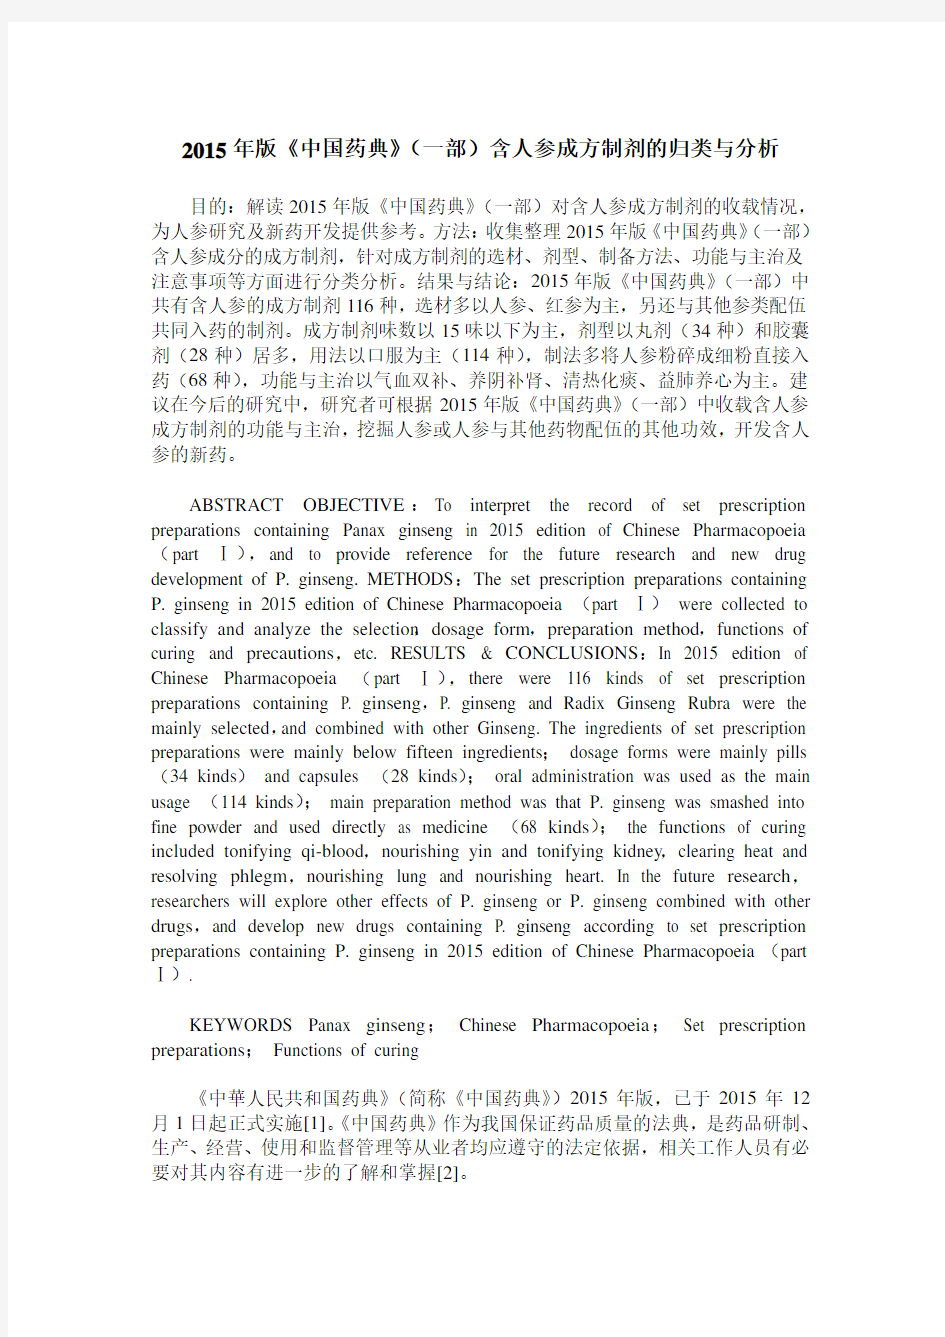 2015年版《中国药典》(一部)含人参成方制剂的归类与分析